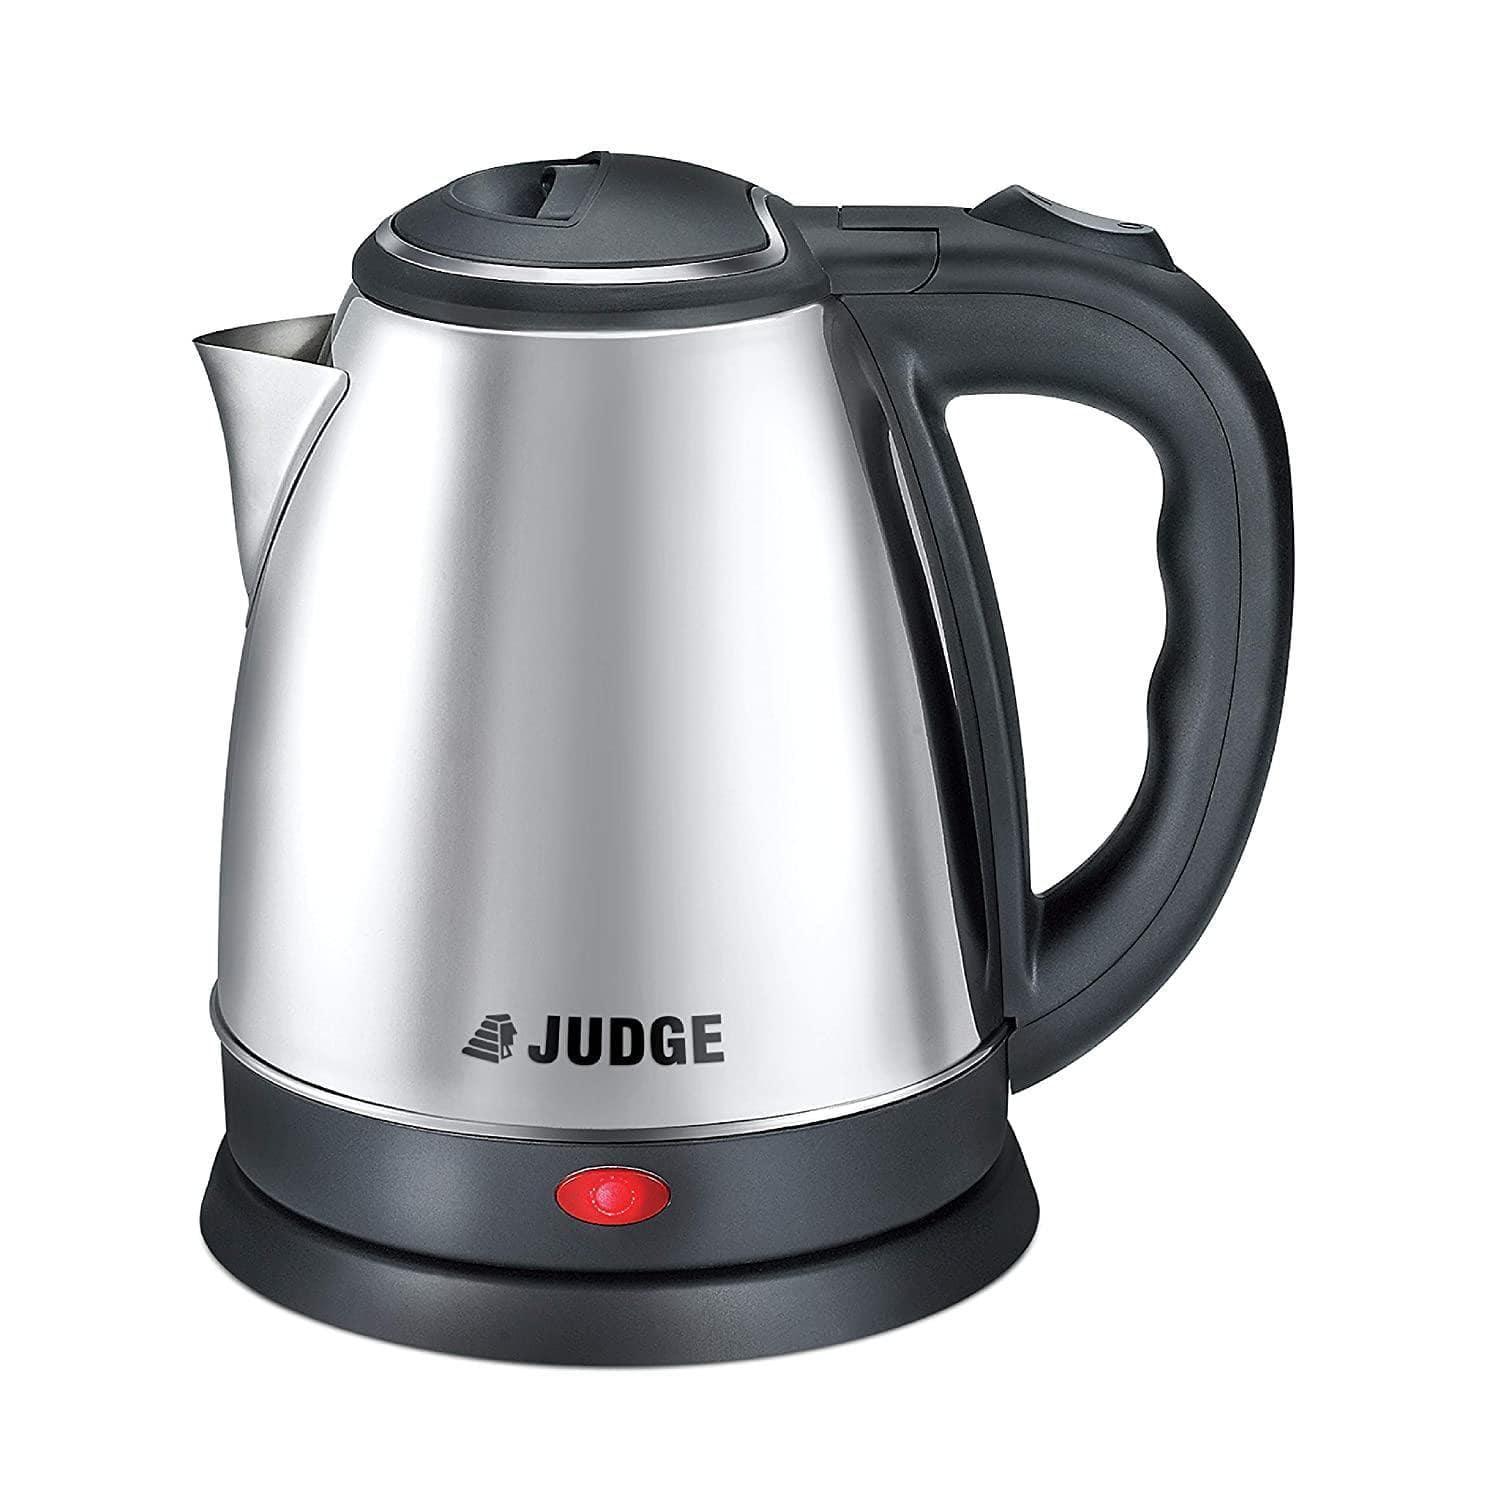 Judge 1.2-Litre Electric Kettle-Home & Kitchen Appliances-dealsplant